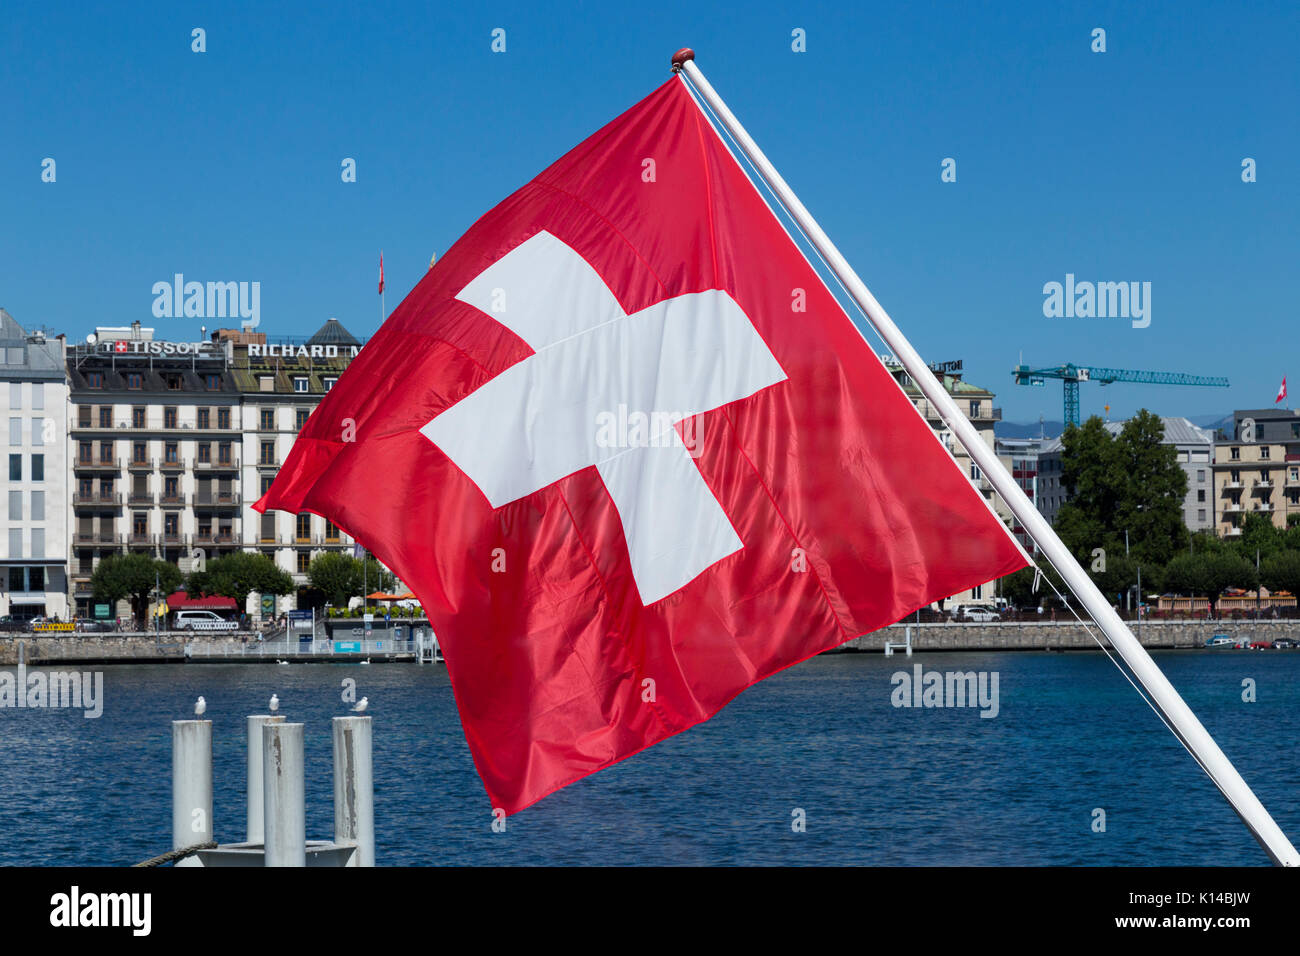 Le drapeau suisse, drapeau de la Suisse, en survolant le Lac Léman / Lac Léman. Genève / Geneva, Suisse. Banque D'Images